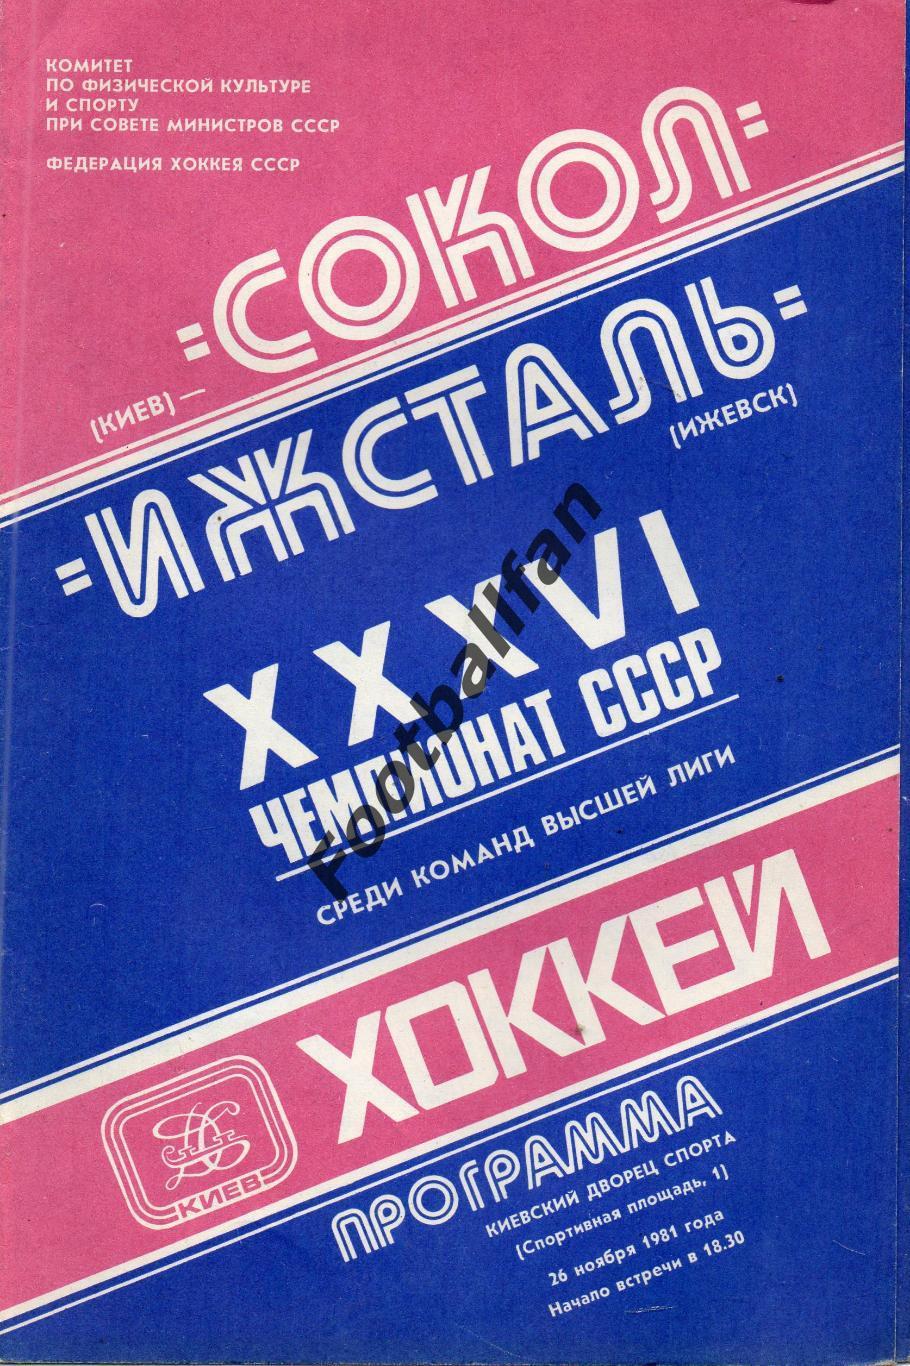 Сокол Киев - Ижсталь Ижевск 26.11.1981